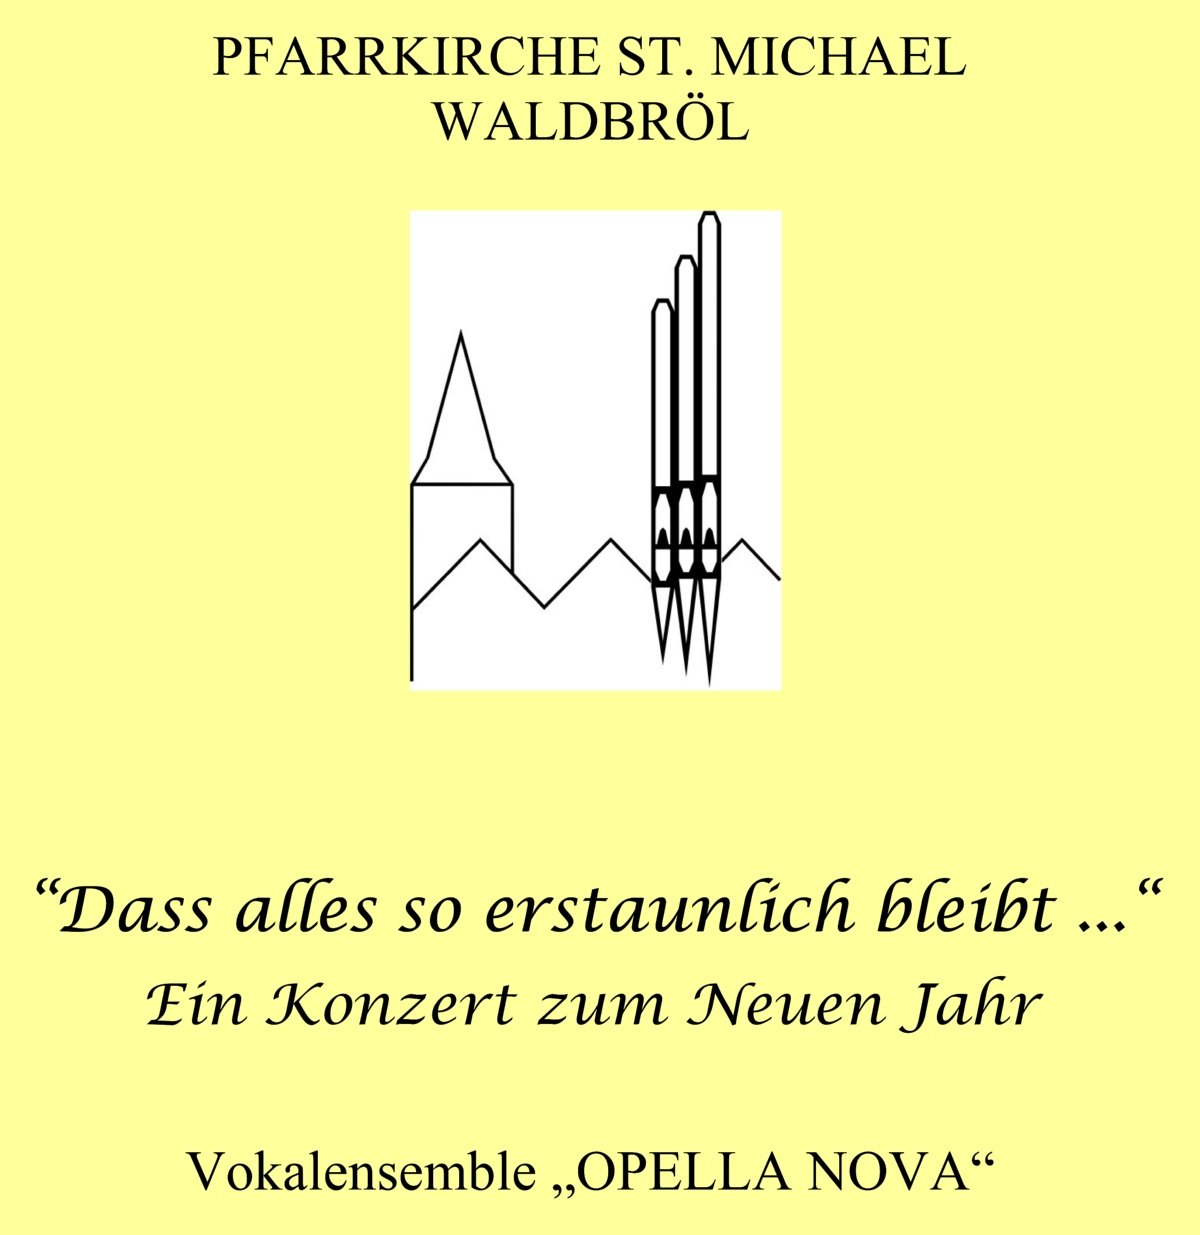 2022KonzertDassallesSoErstaunlichBleibtWaldbroehl (c) Verein zur Förderung der Kirchenmusik an St. Michael